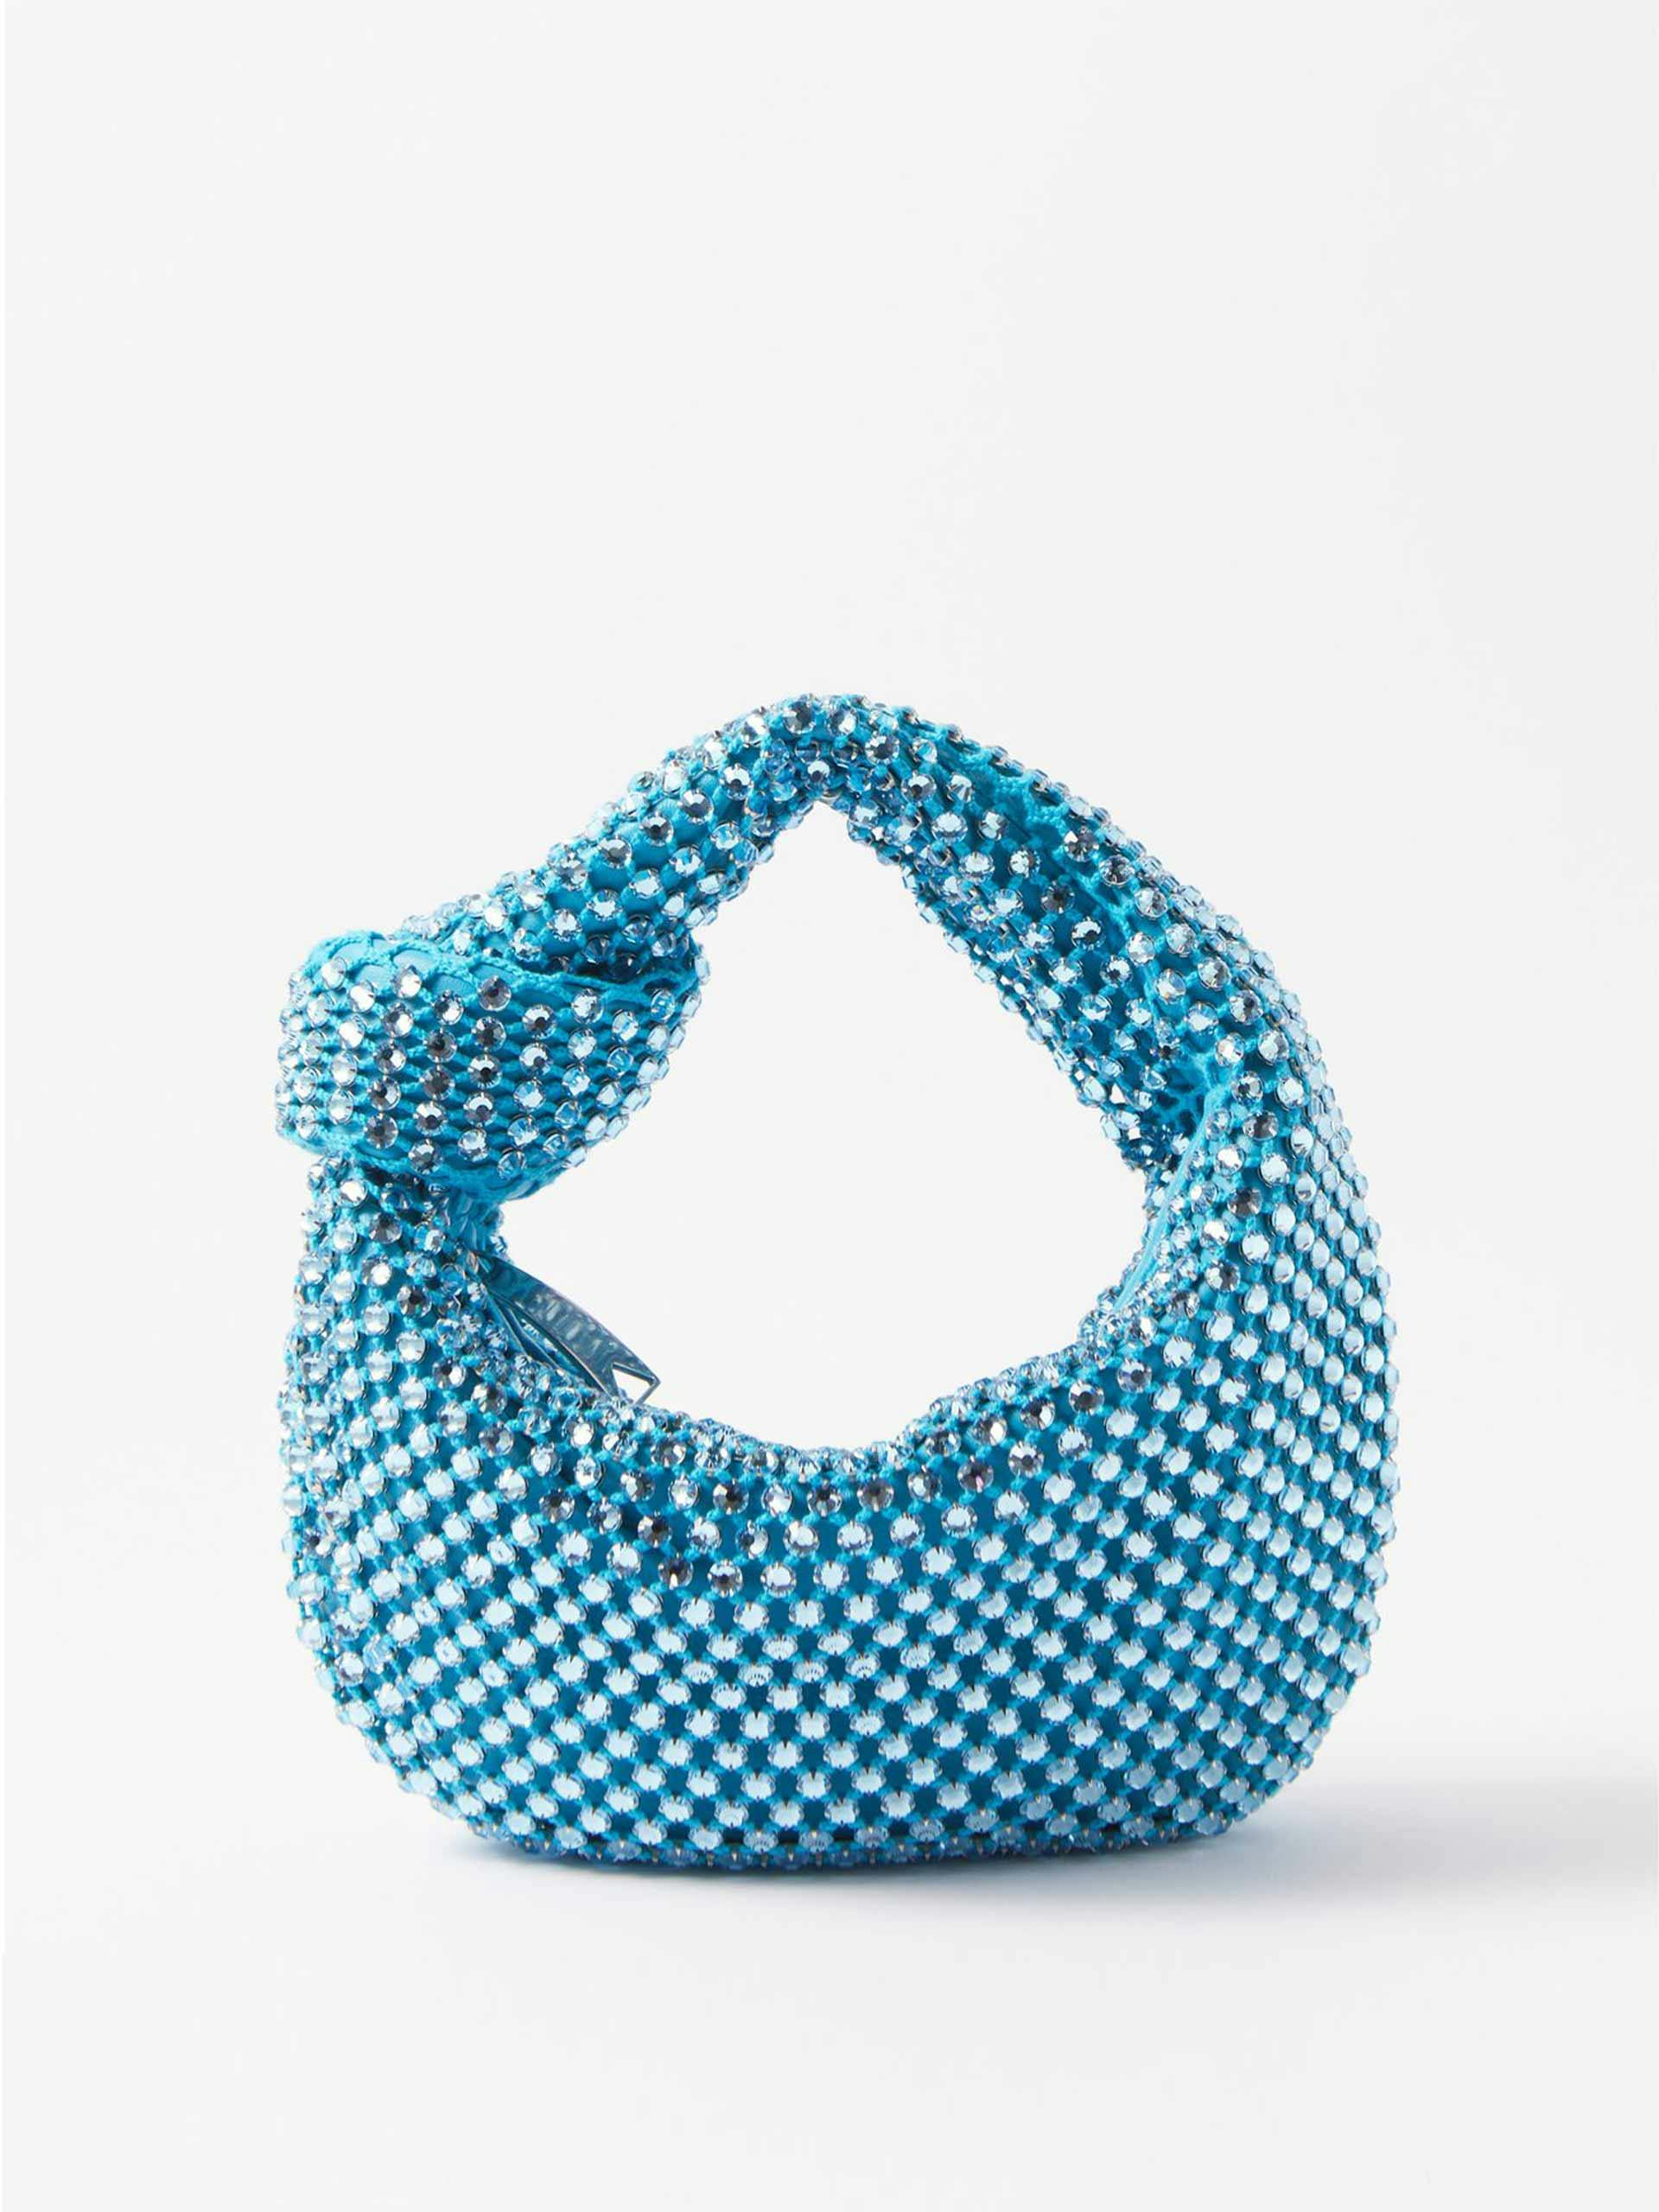 Blue crystal-netting clutch bag